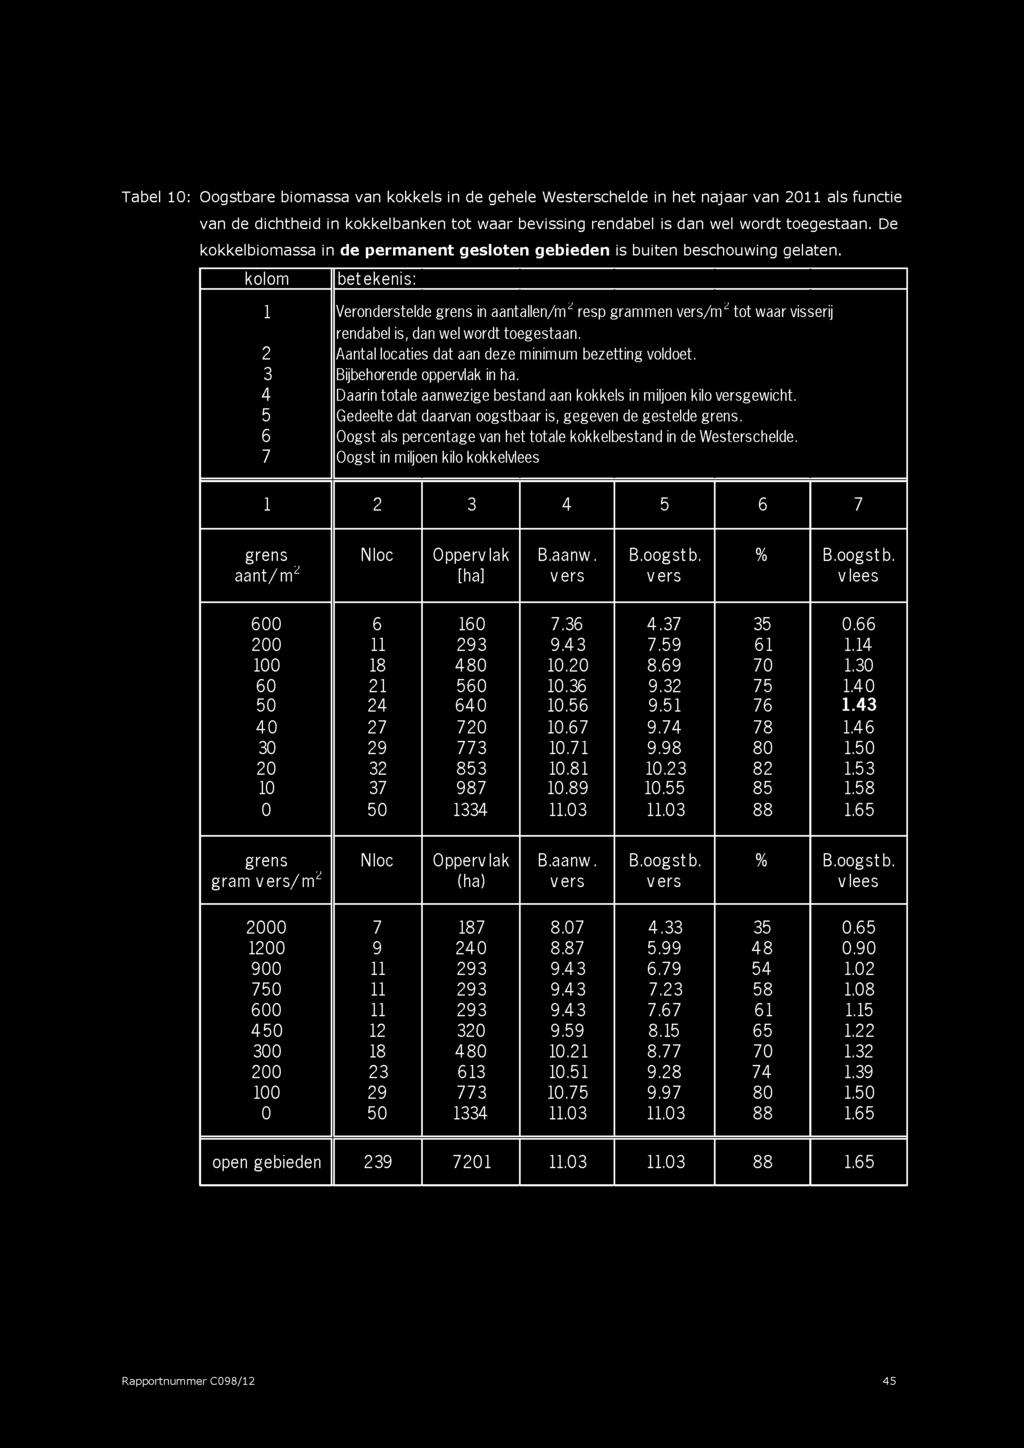 Tabel 10: Oogstbare biomassa van kokkels in de gehele Westerschelde in het najaar van 2011 ais functie van de dichtheid in kokkelbanken to t waar bevissing rendabel is dan wel wordt toegestaan.